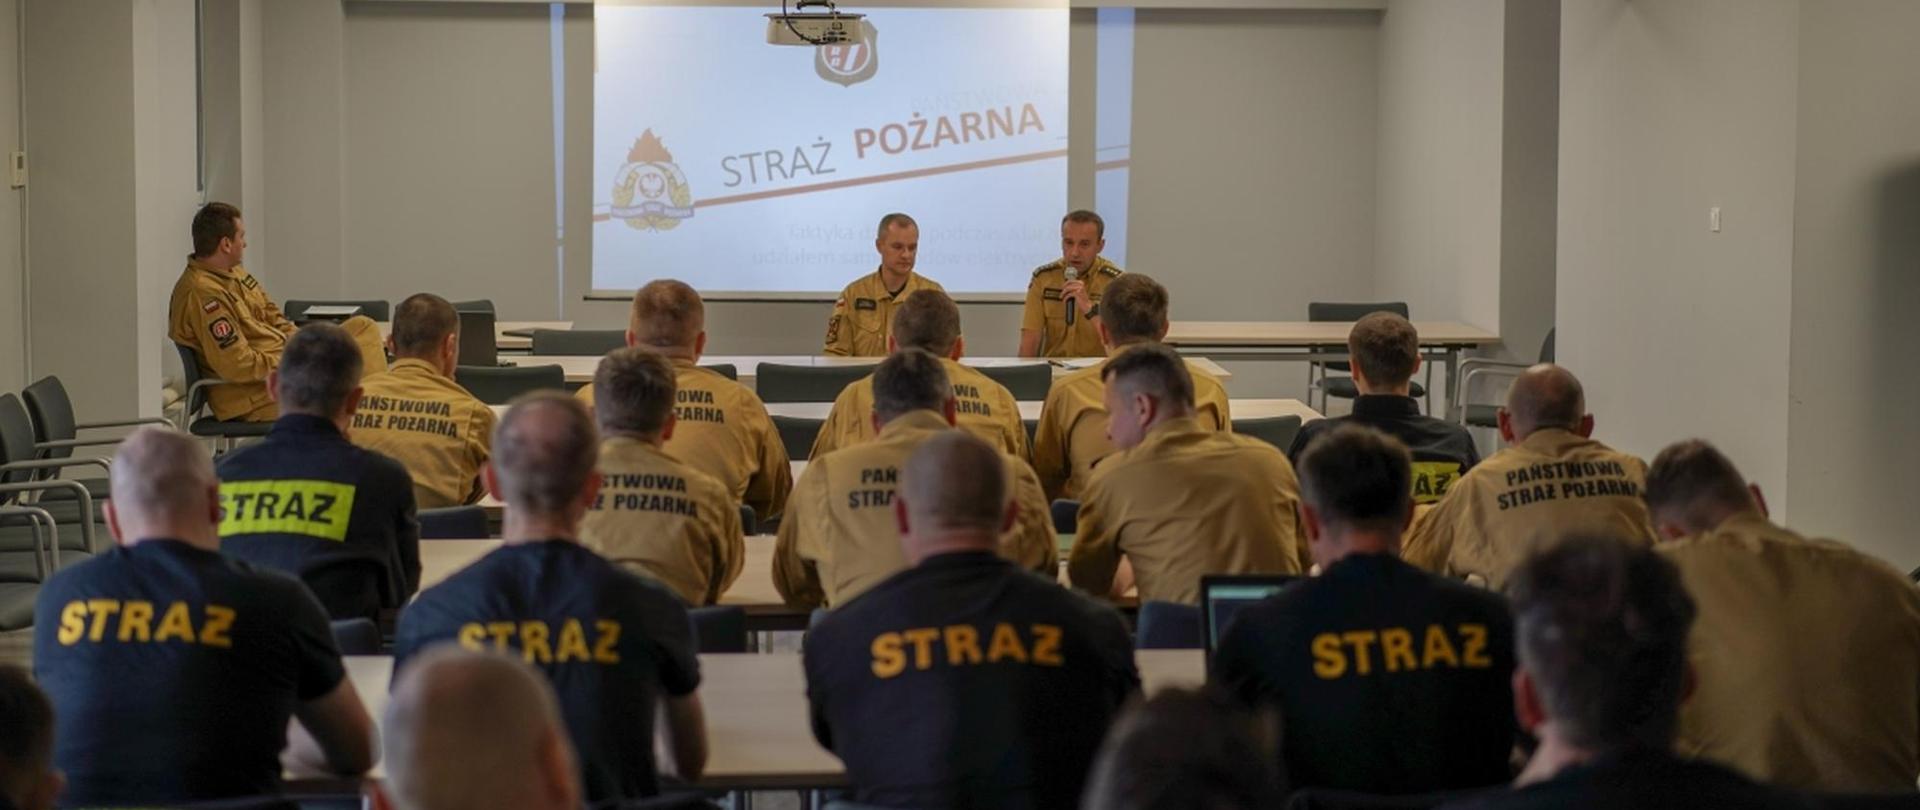 Rozpoczęcie szkolenie przez Zastępcę Komendanta Miejskiego PSP w Poznaniu - st. bryg. Grzegorza Banaszaka